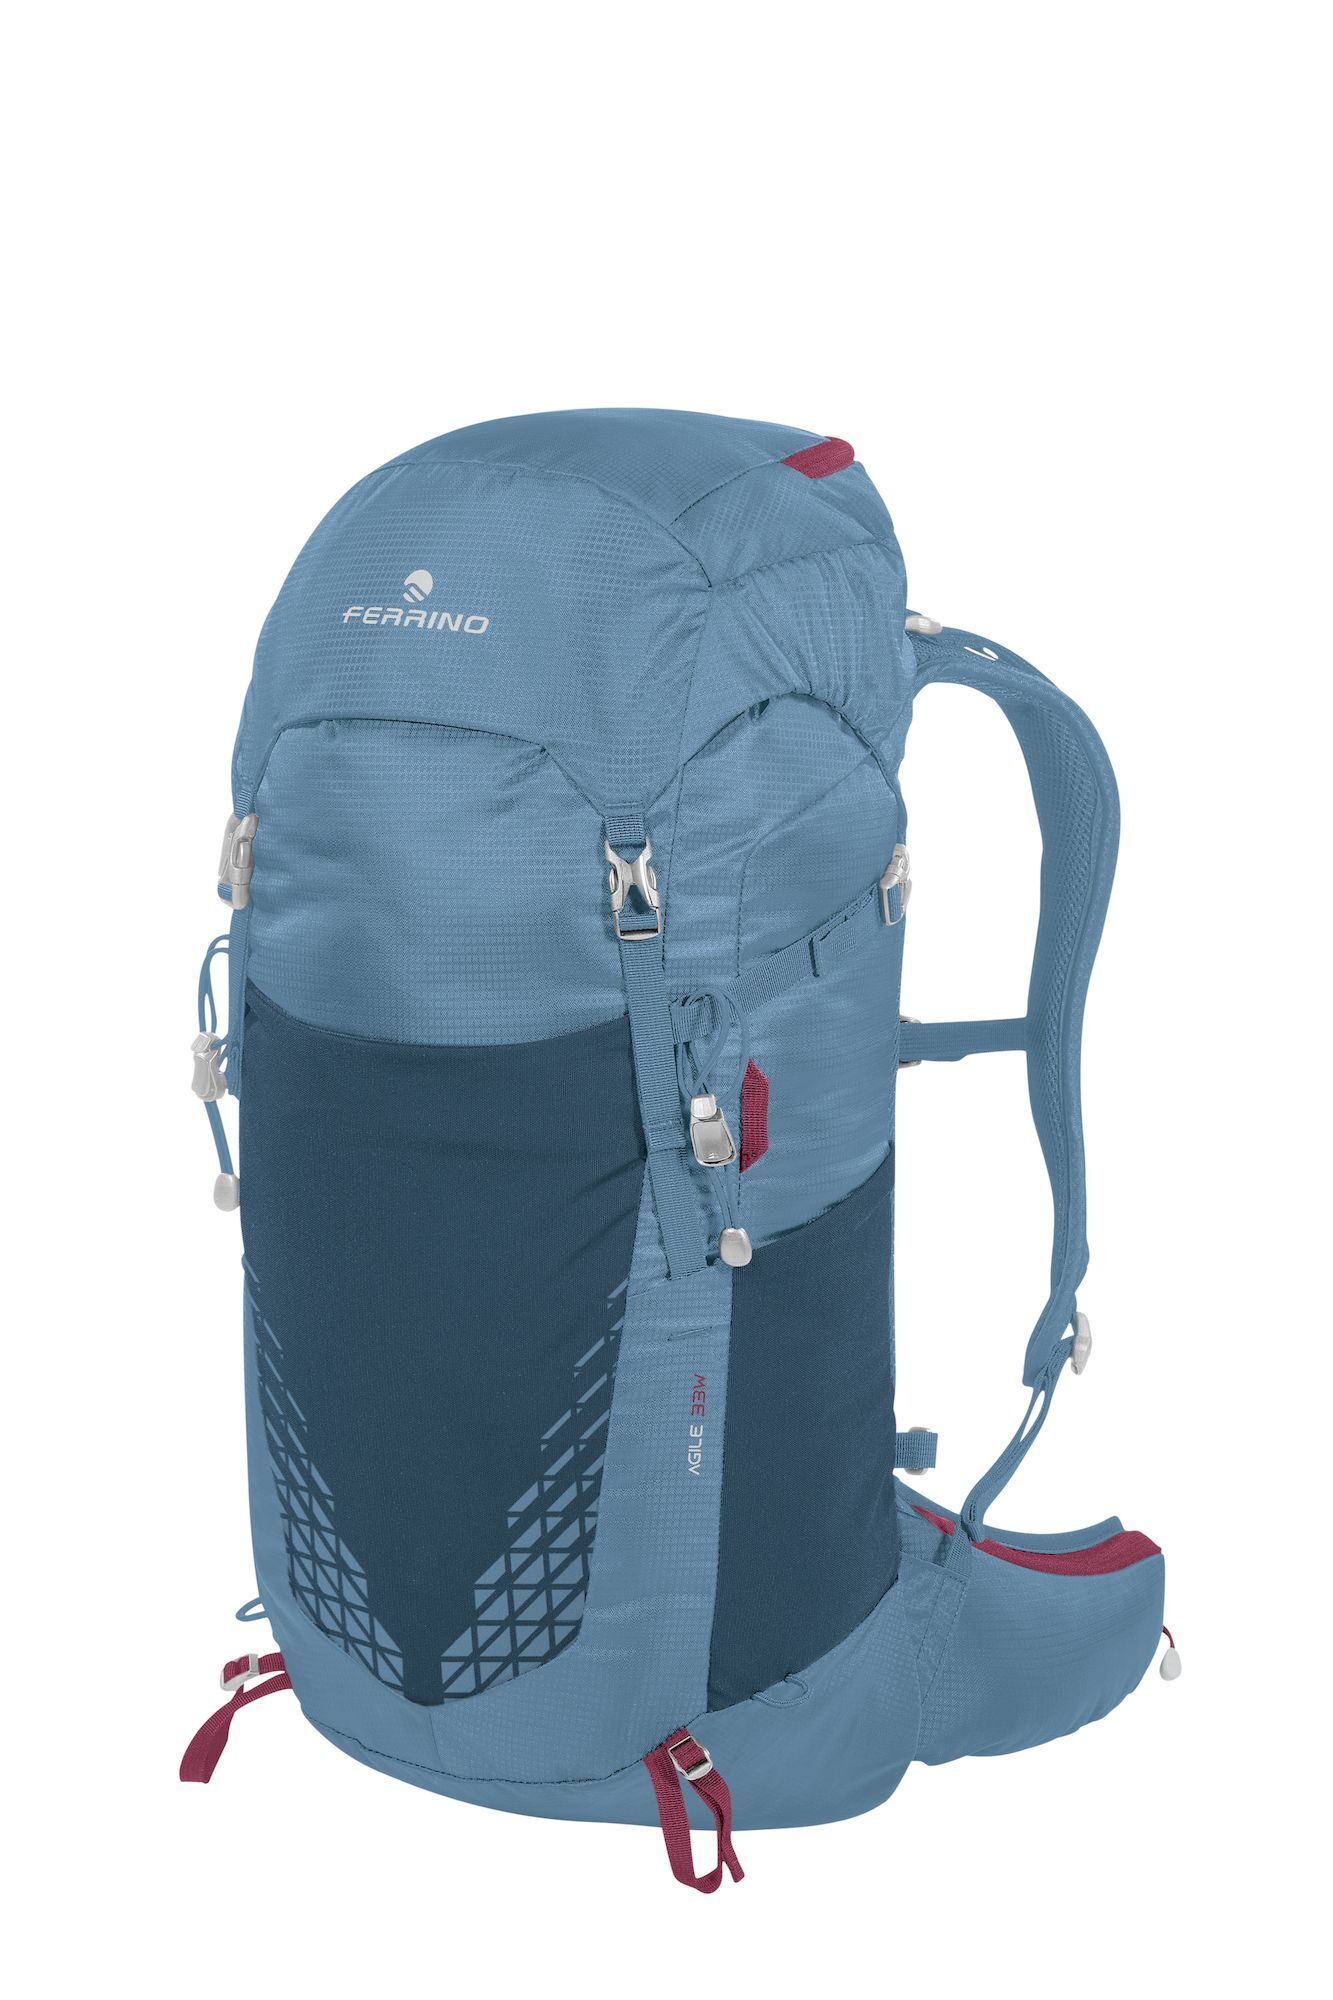 Ferrino Agile 33 Lady - Hiking backpack - Women's